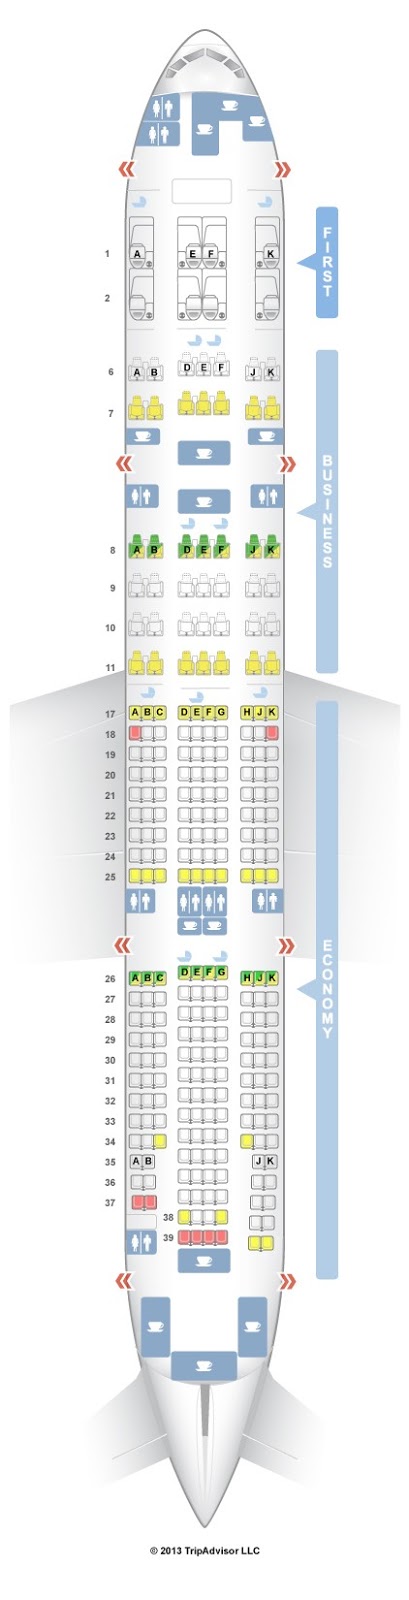 Air Canada 777 200lr Seating Chart